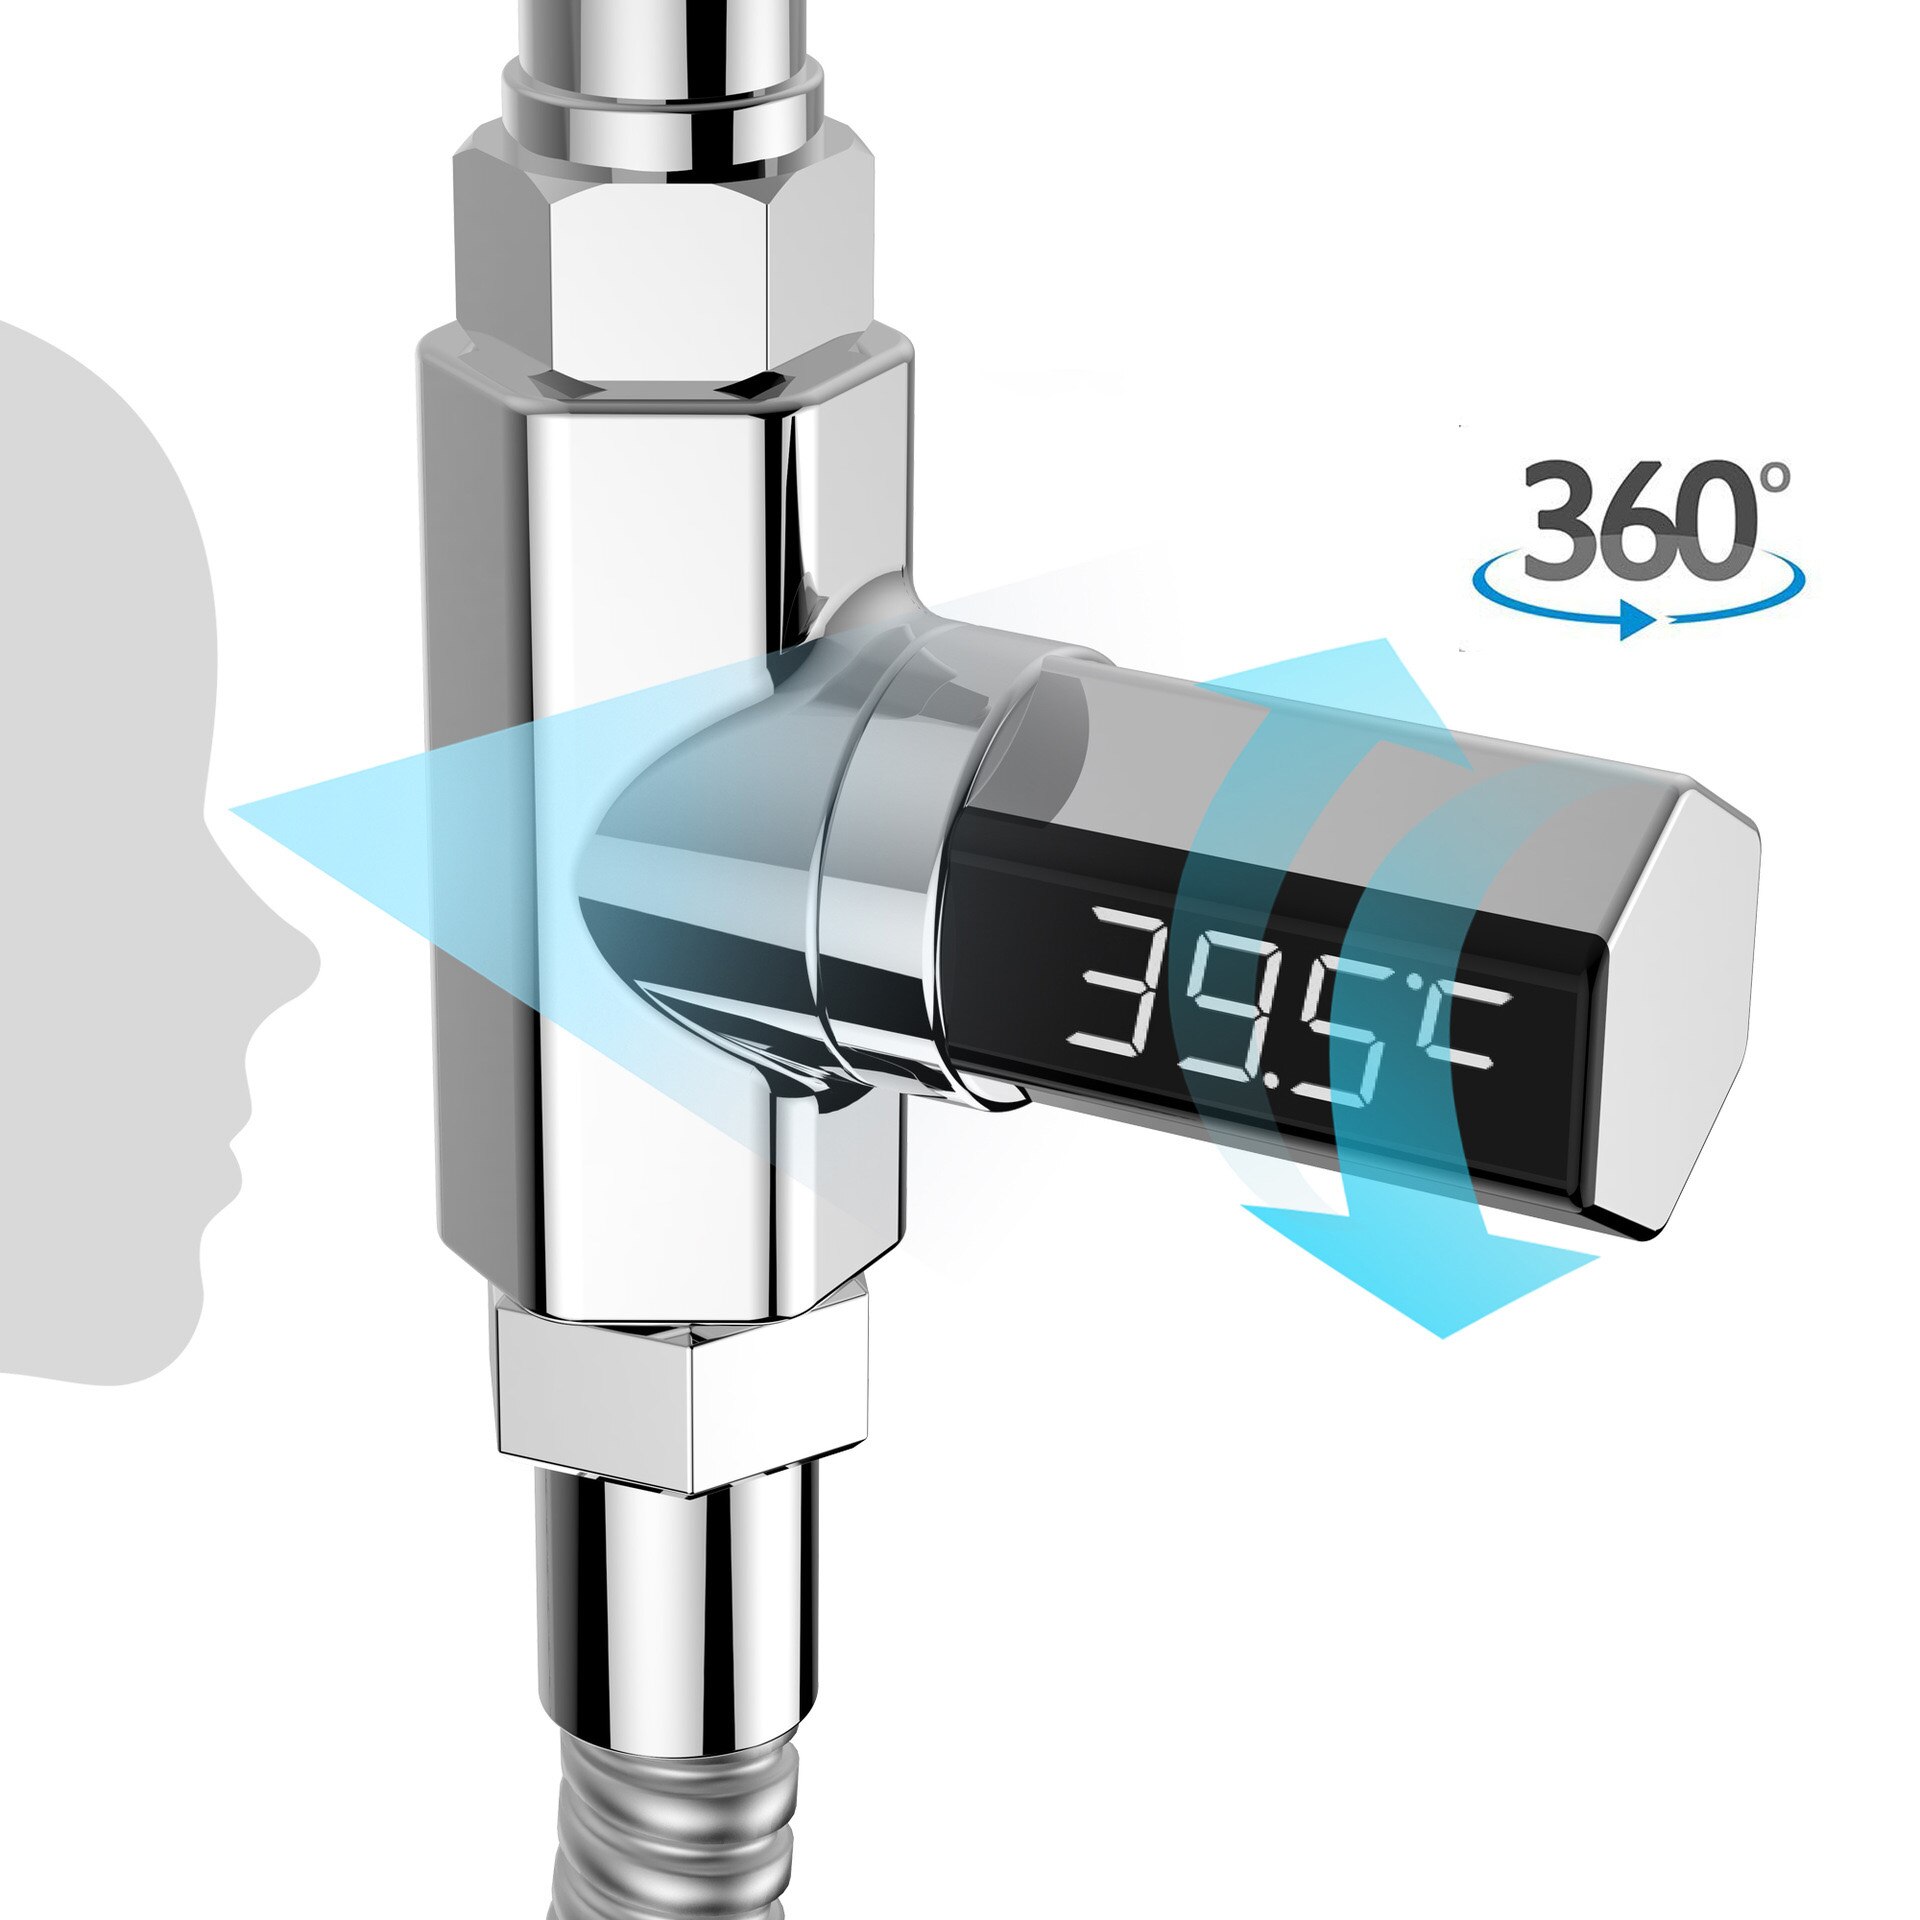 Led-display vandtemperaturmåler overvåge elektricitet babybadekar termometer 360 graders rotation flow selvgenererende